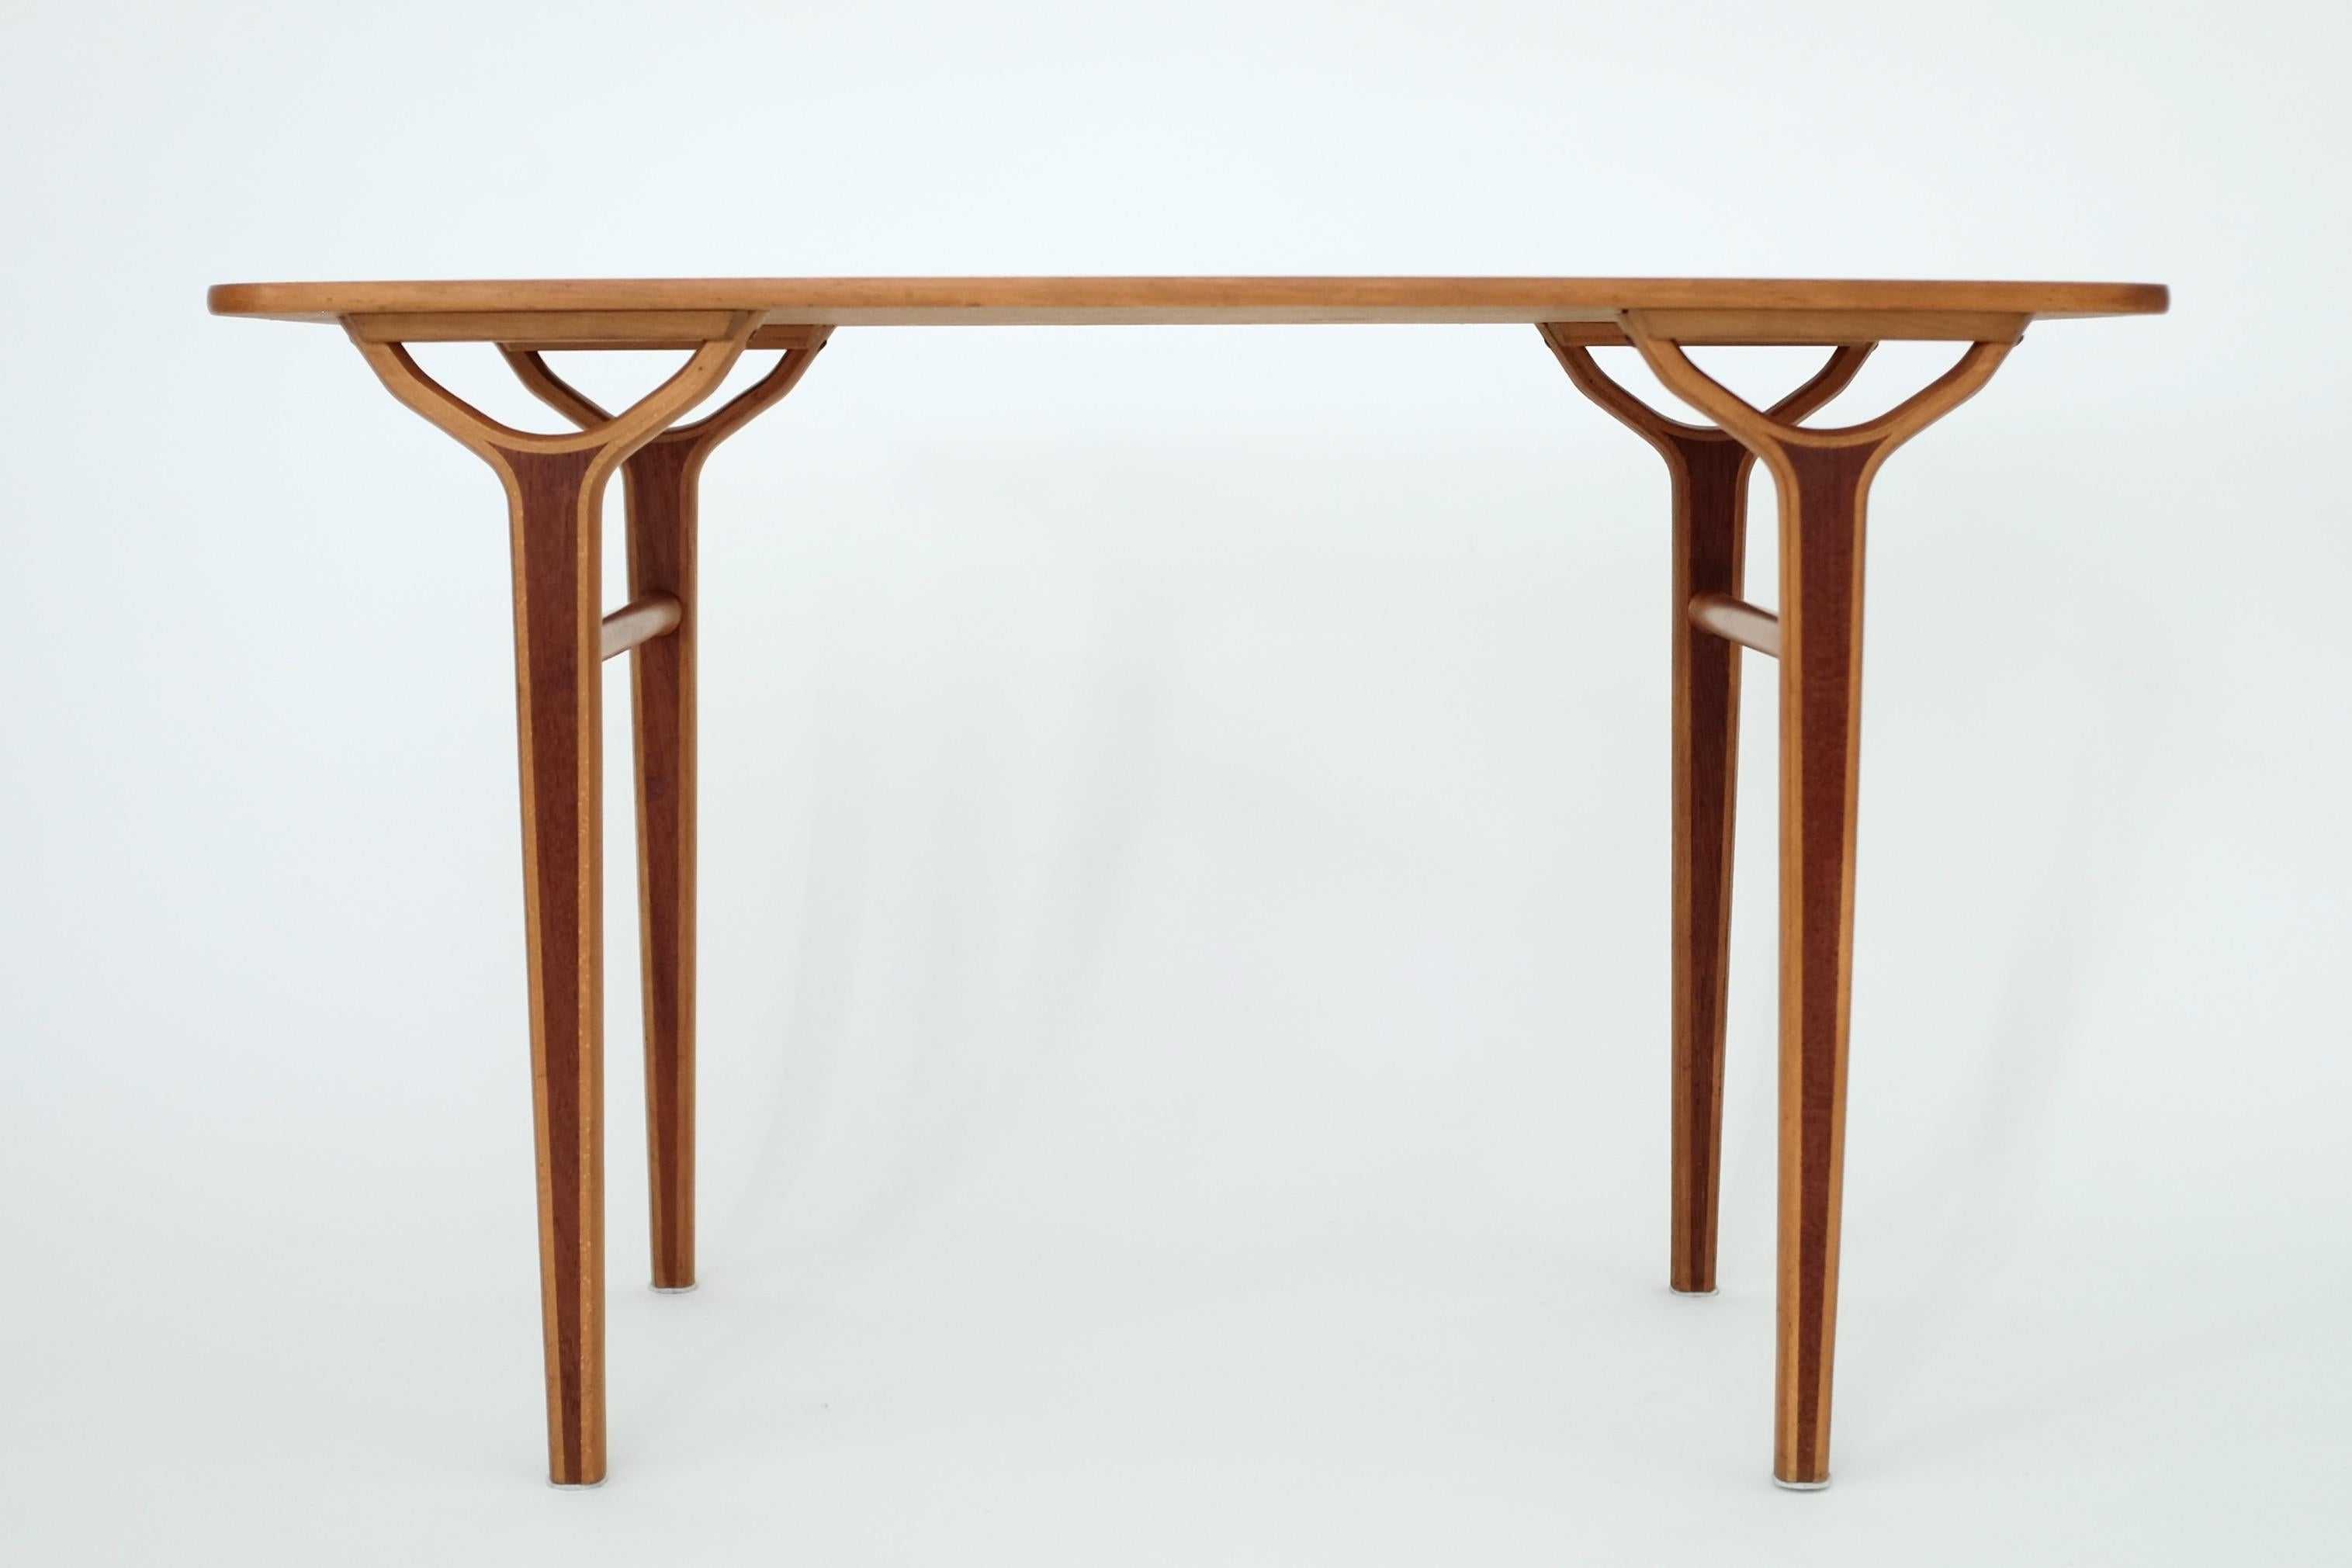 Magnifique et rare table d'appoint des années 1950 par Peter Hvidt & Orla Mølgaard-Nielsen pour Fritz Hansen. Elle faisait partie de la série AX conçue par les deux designers pour FH et contenait des tables et des chaises. Les incrustations de teck